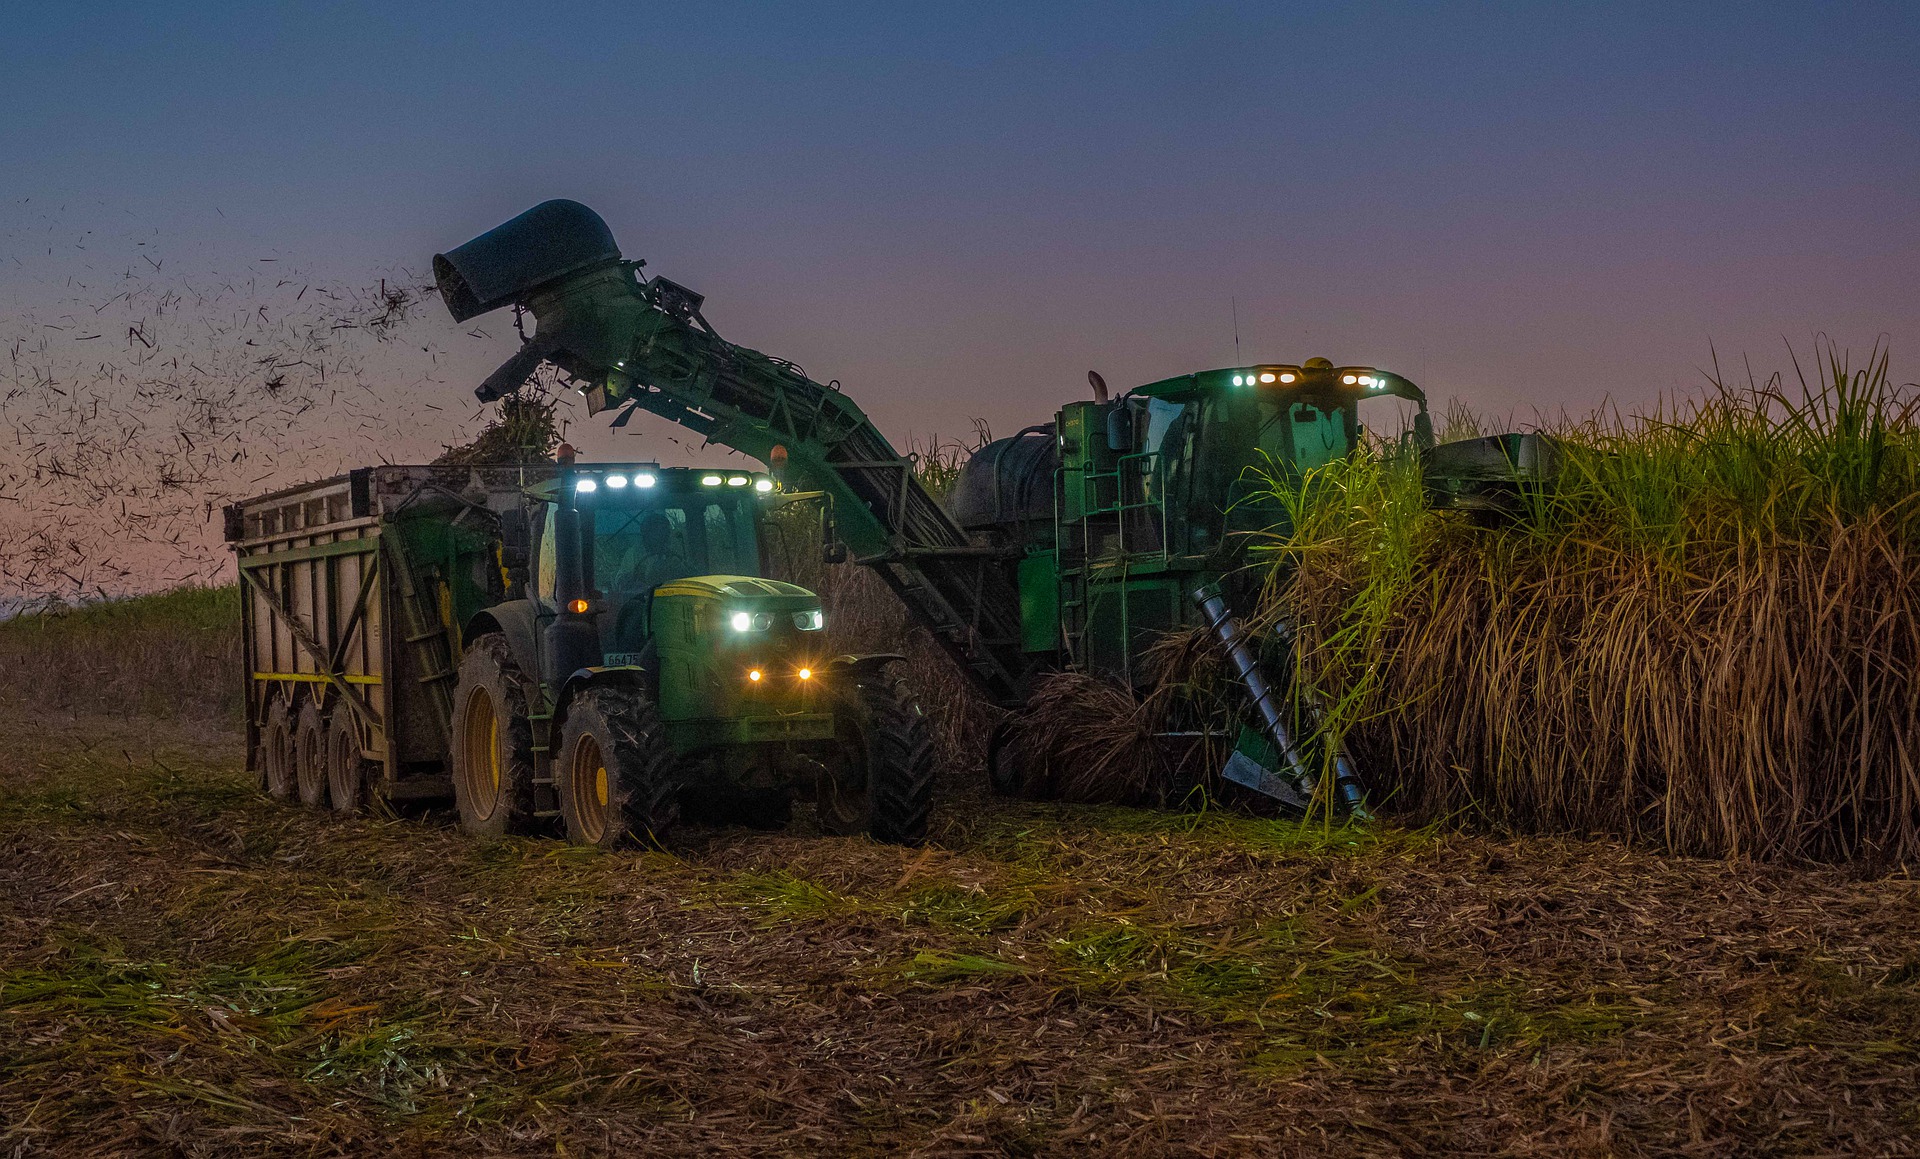 Máquinas usadas na colheita da cana durante a noite